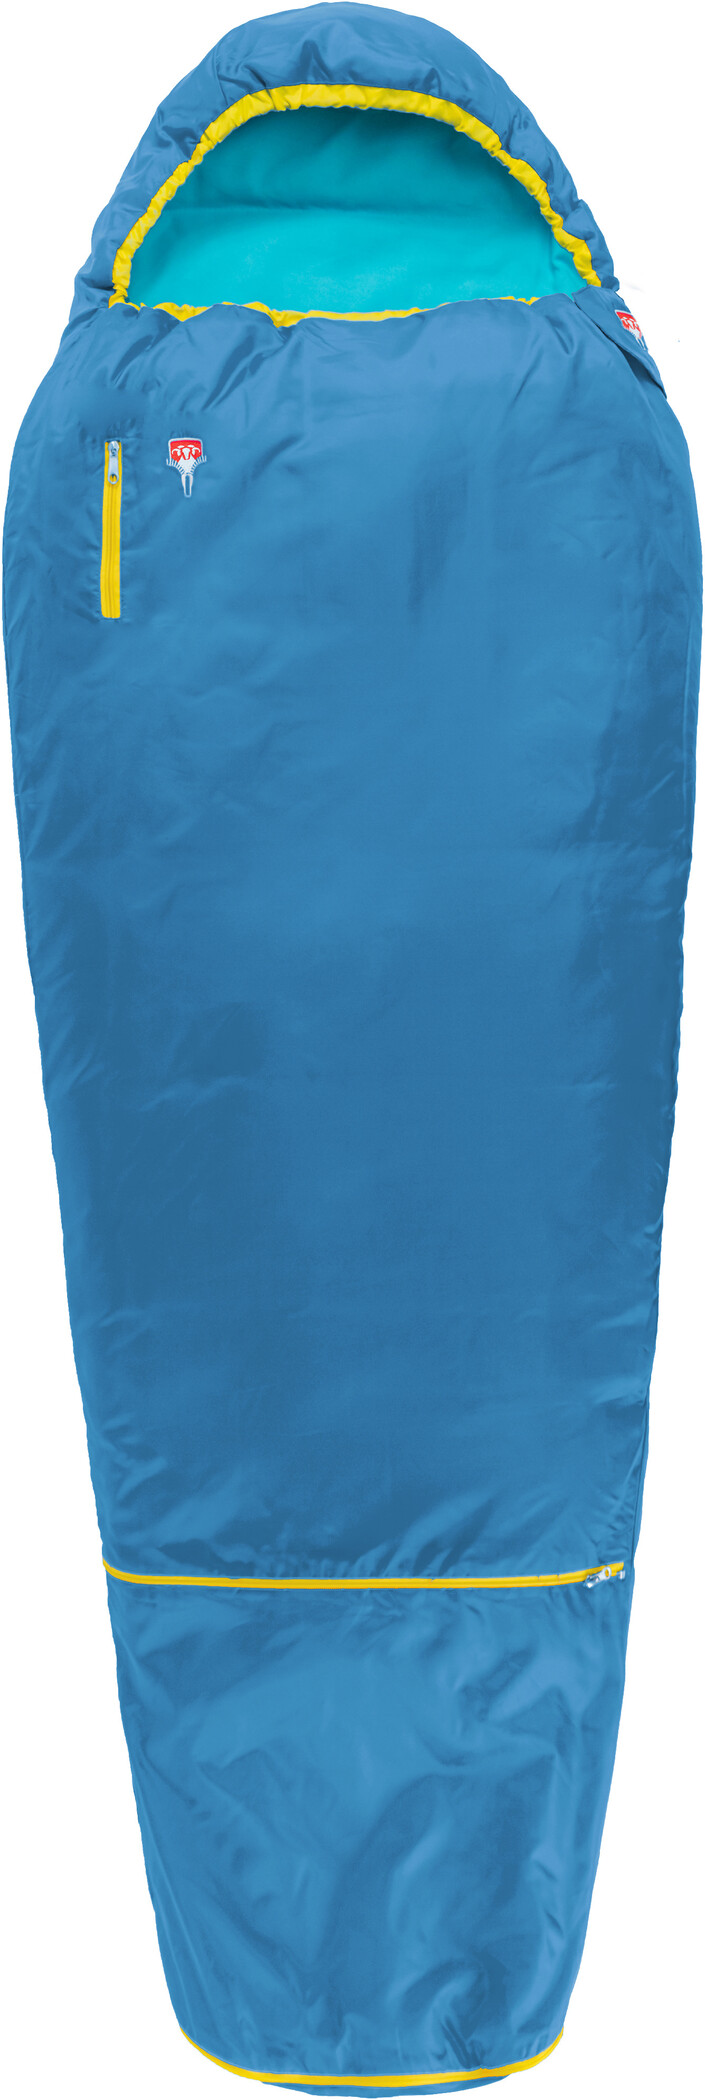 Grüezi-Bag Schlafsack Deckenschlafsack Mumienschlafsack für Kinder Water Blau 